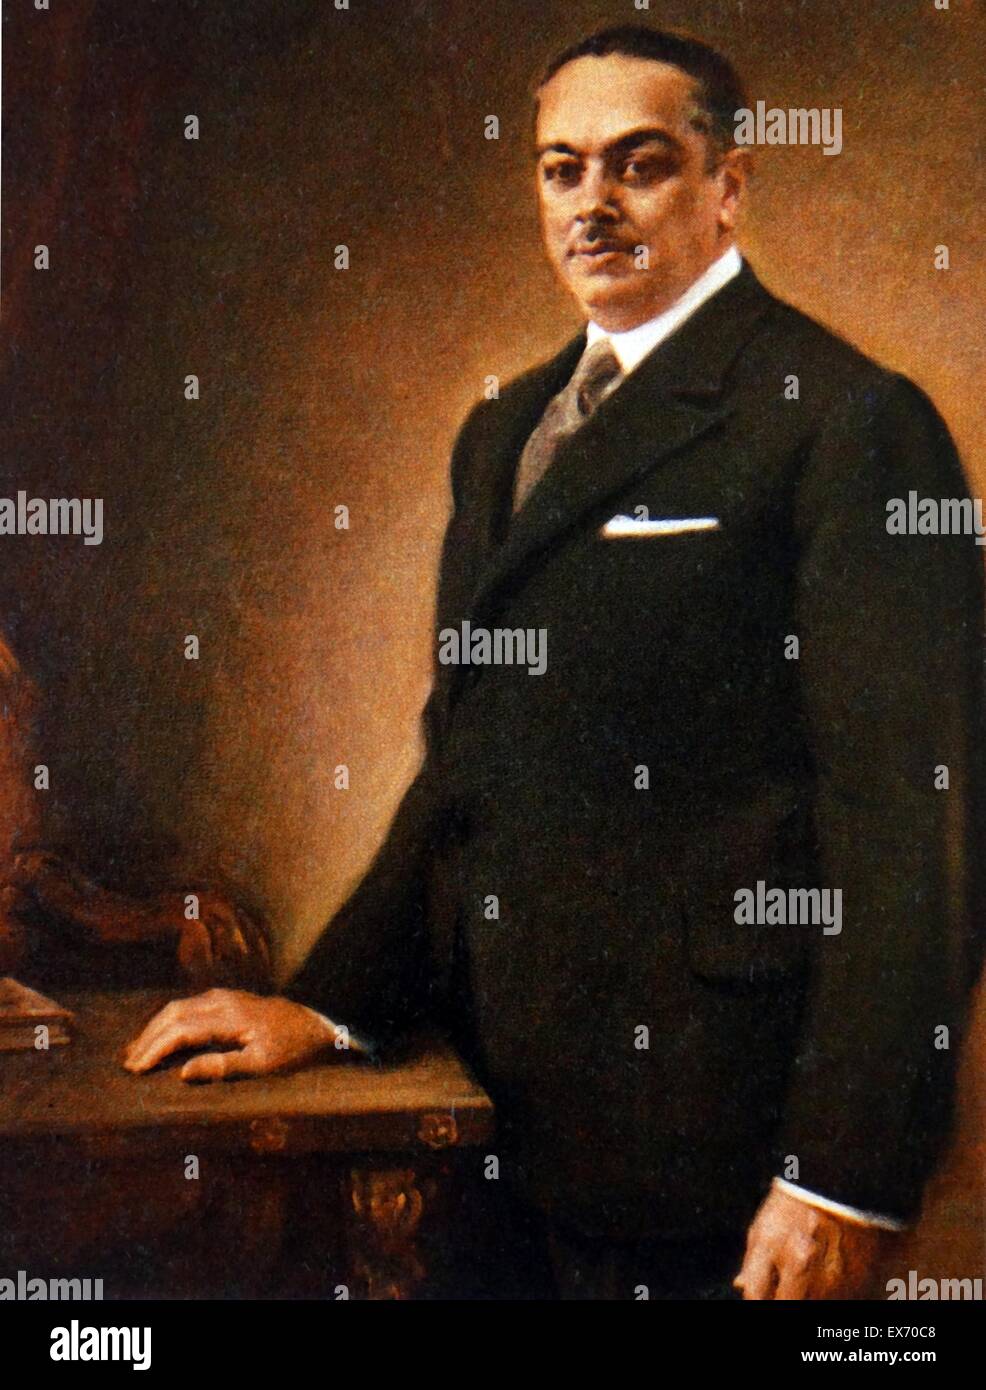 Porträt von Diego Martínez Barrio (1883 – 1962), spanischer Politiker während der zweiten spanischen Republik. Premierminister von Spanien 1933 und 1936. Er war Interims-Präsident der zweiten spanischen Republik vom 7. April bis 10. Mai. Stockfoto